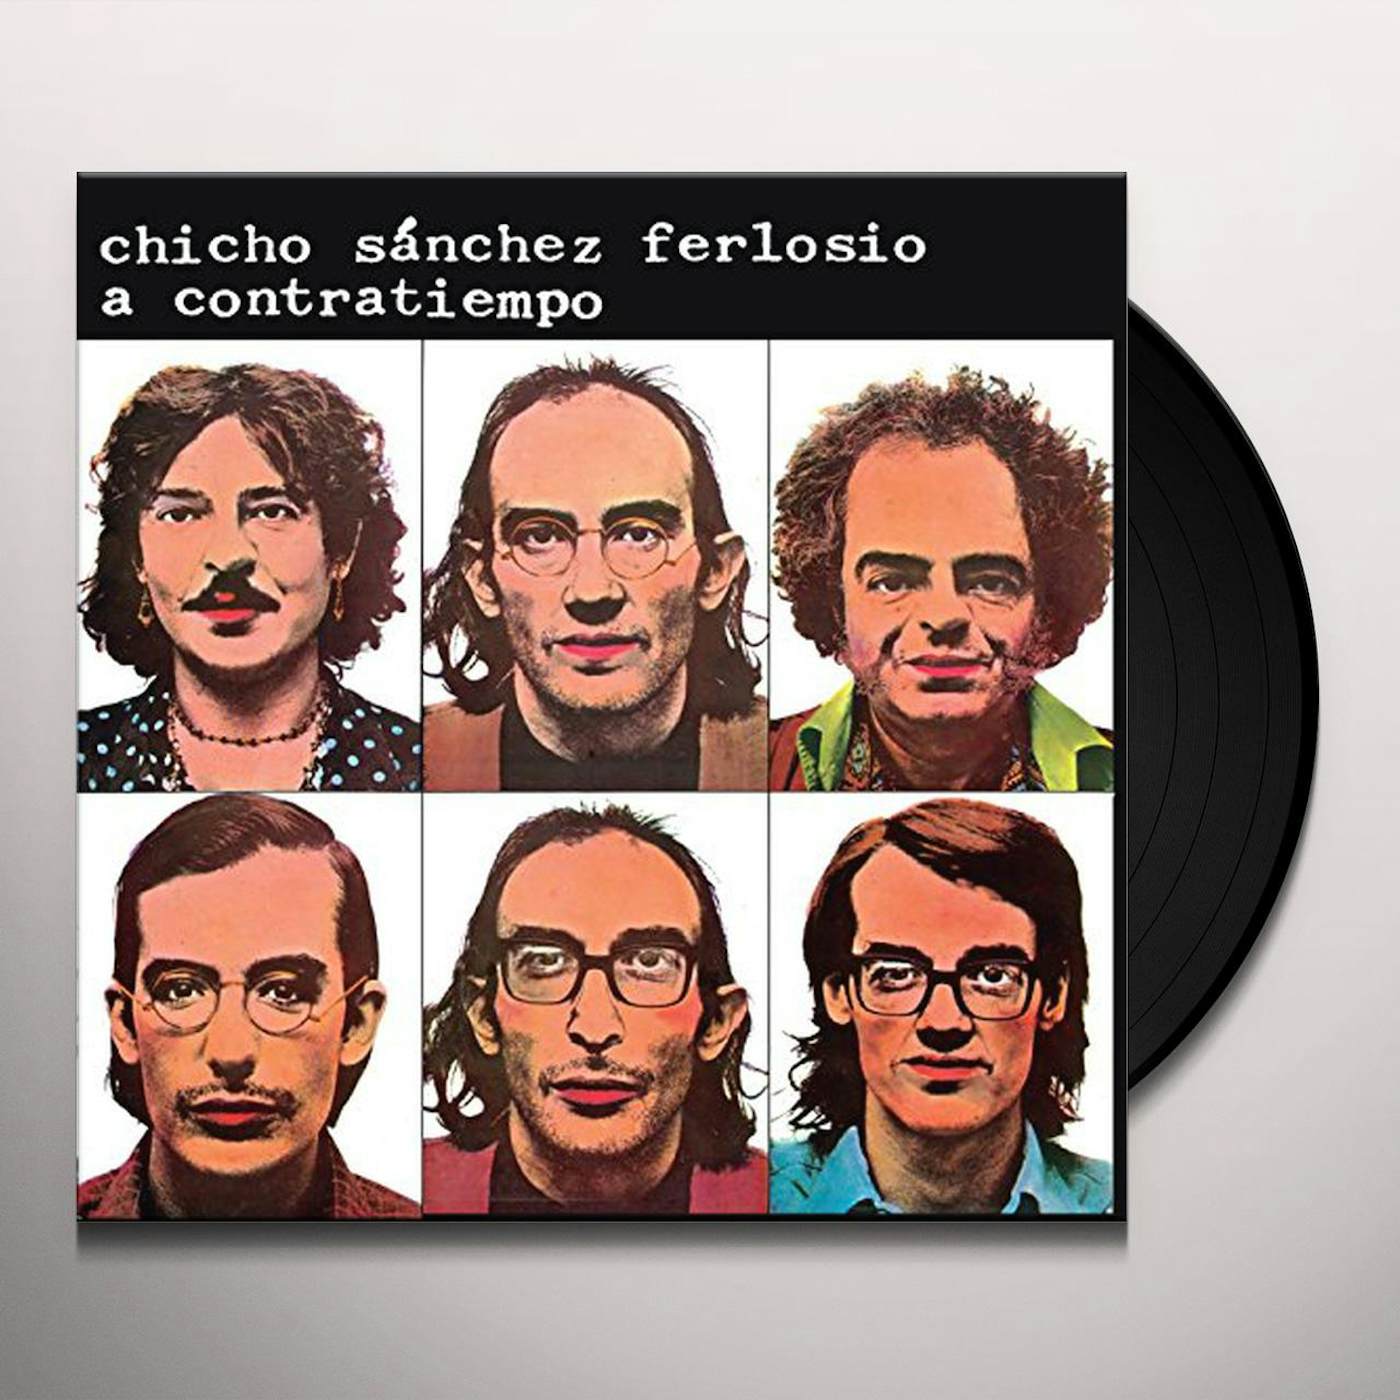 Chicho Sánchez Ferlosio A contratiempo Vinyl Record